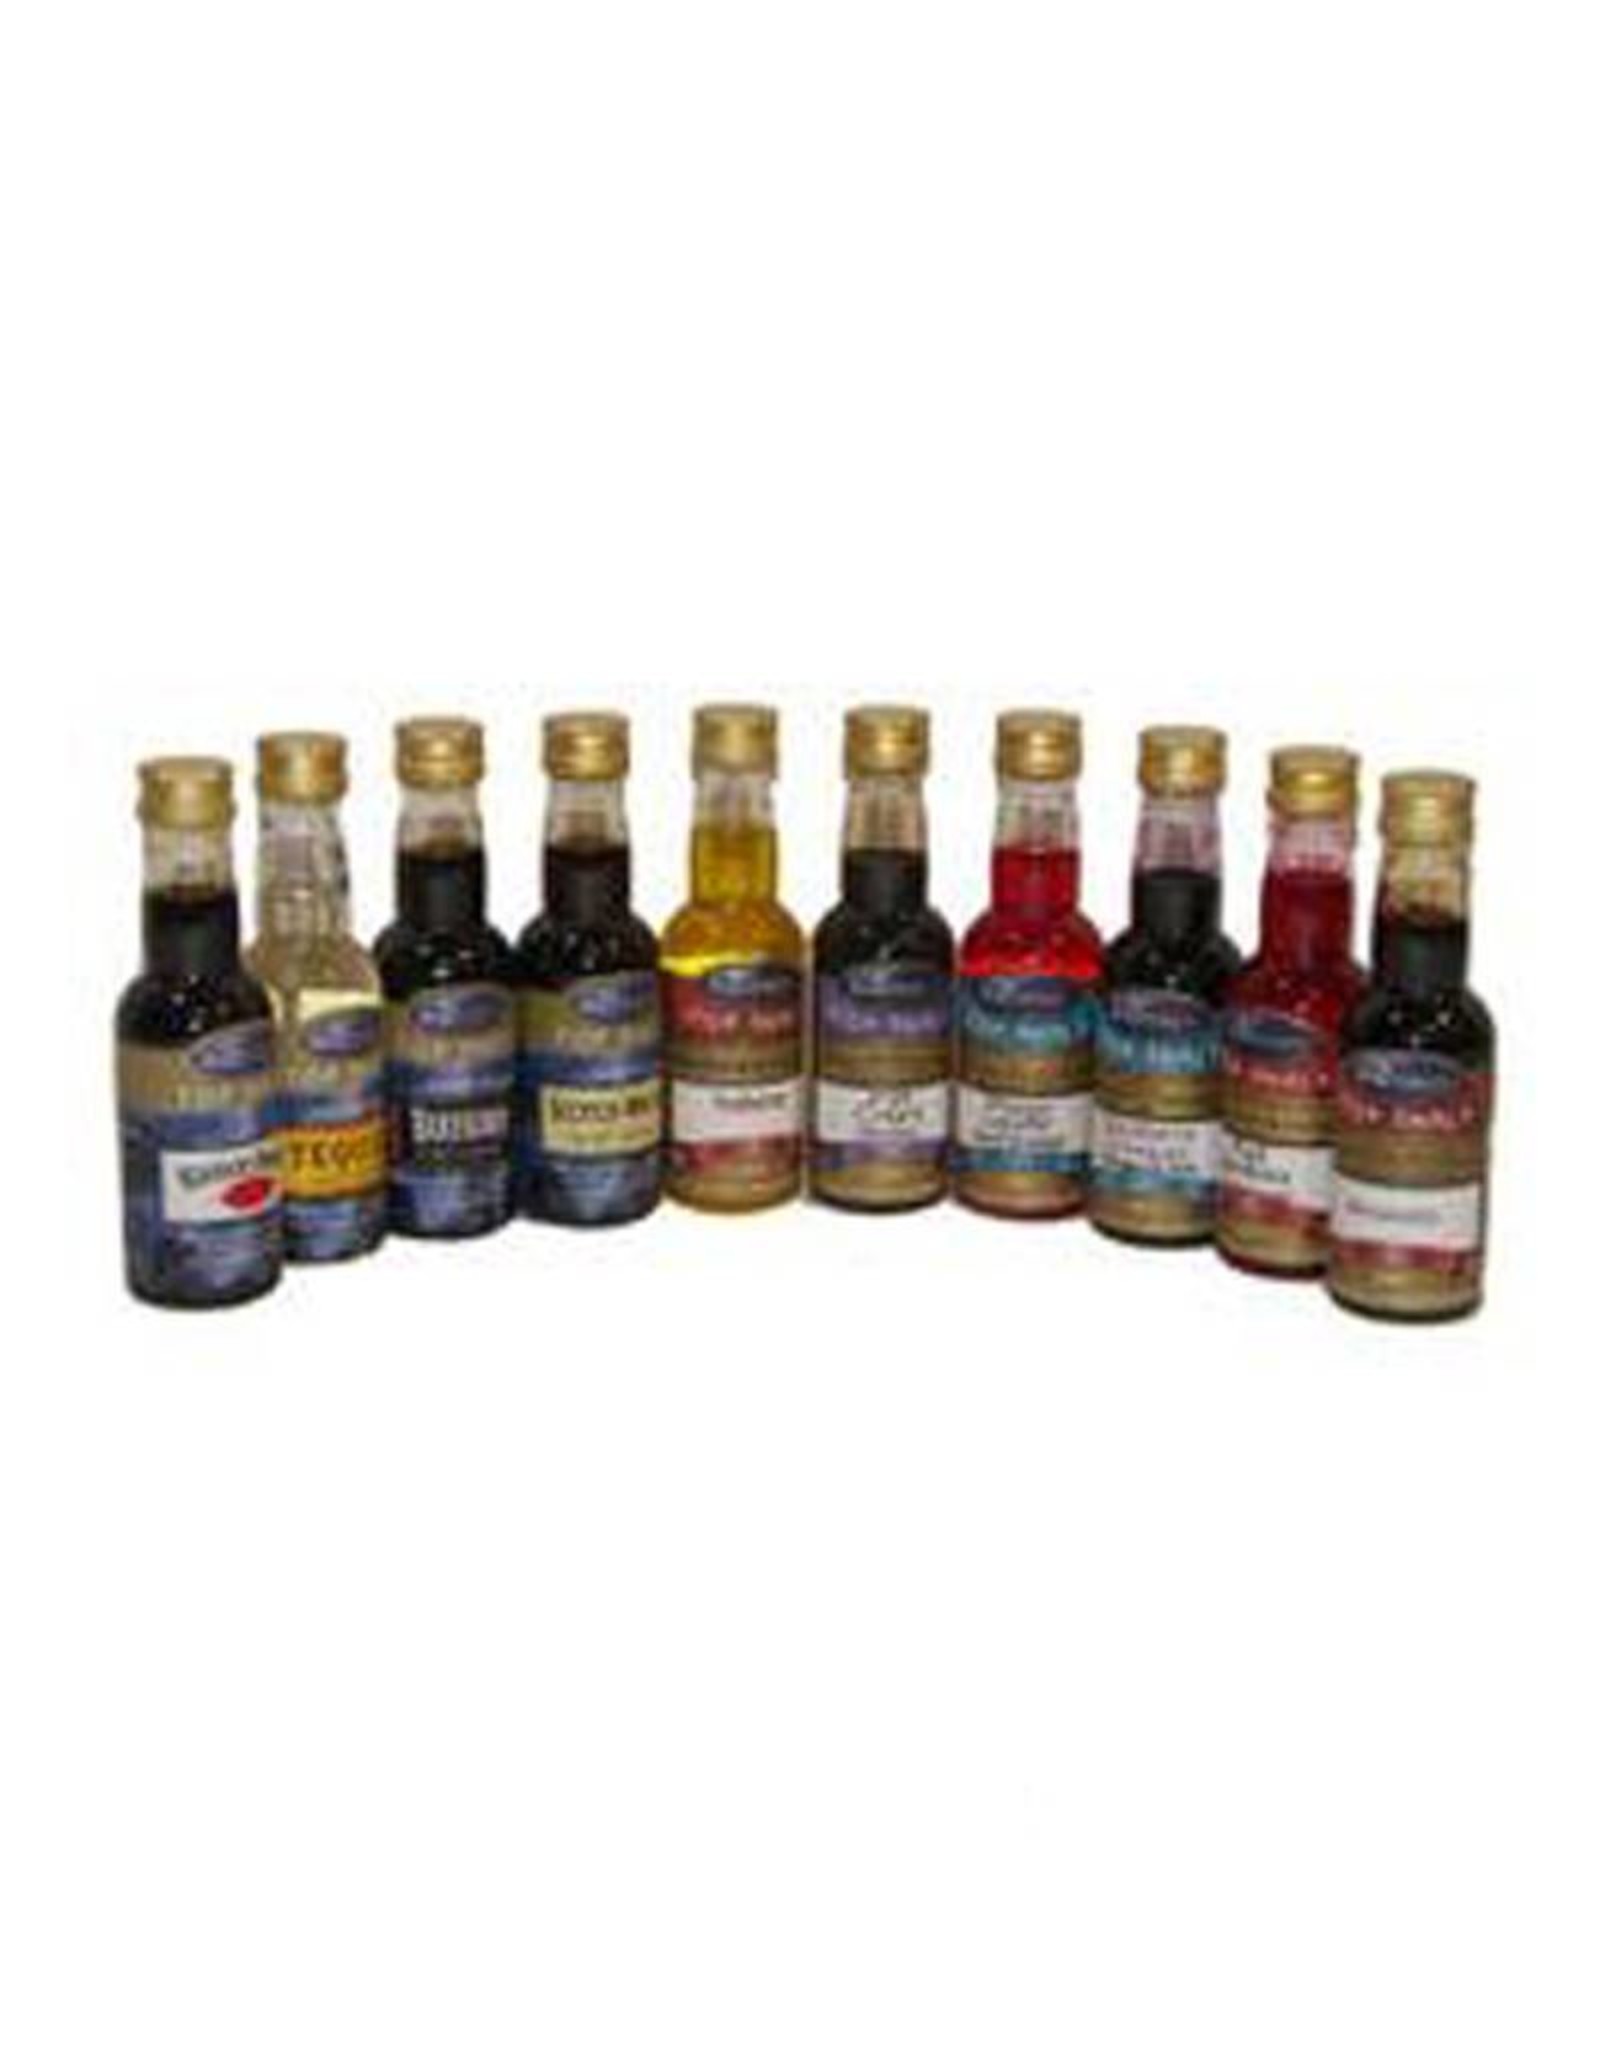 Still Spirits Top Shelf Aussie Gold Rum